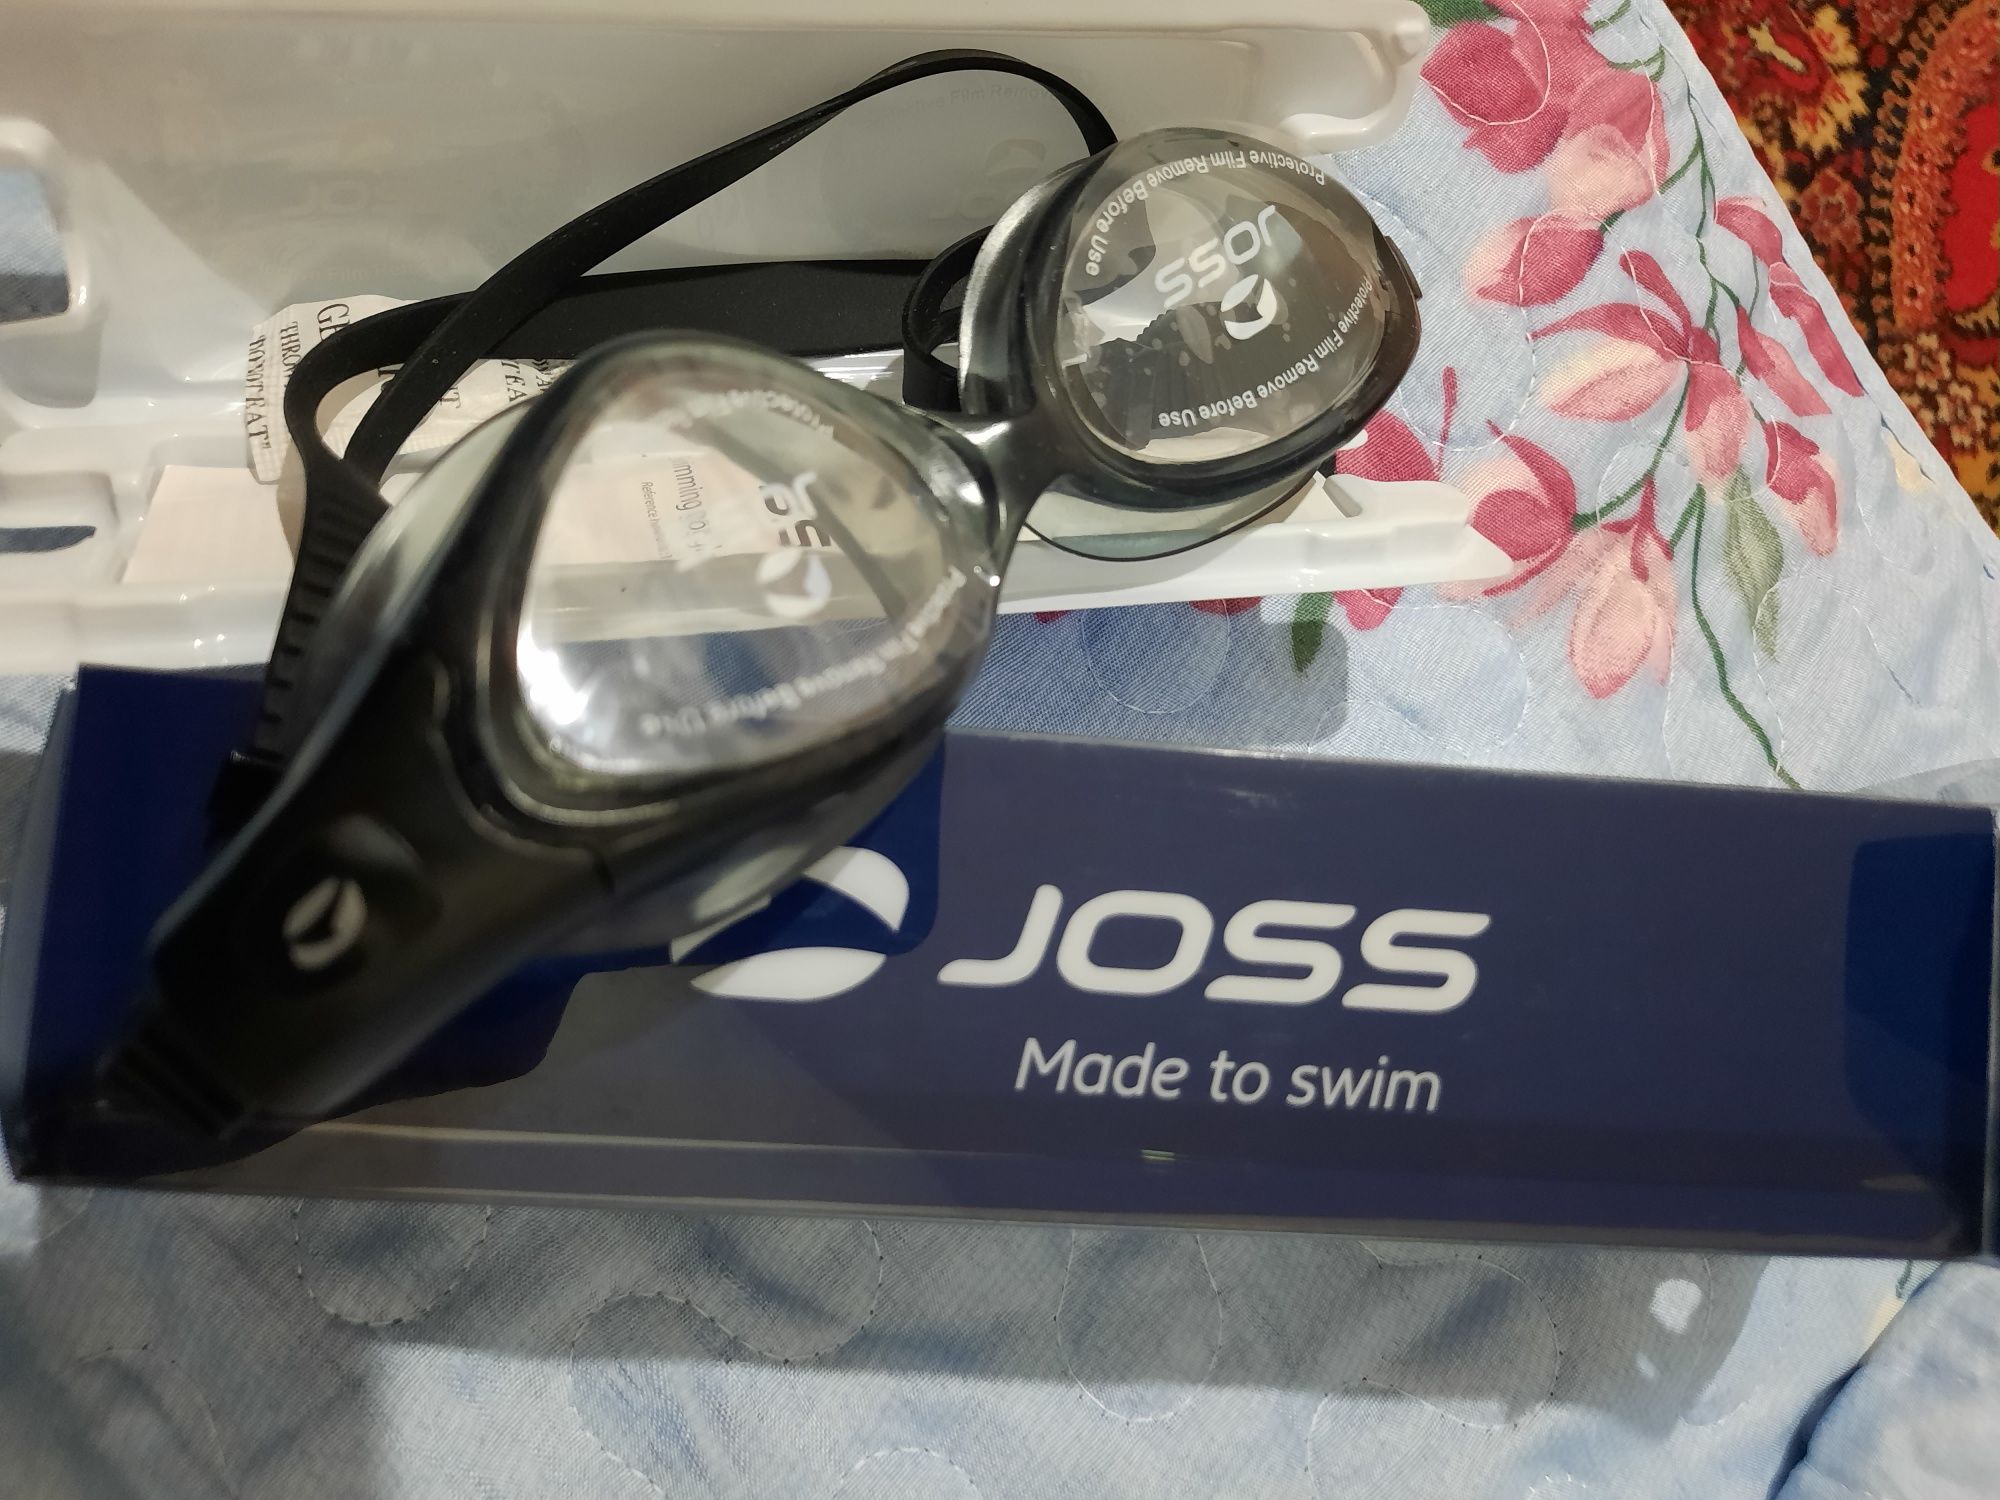 Продам очки для плавания фирмы JOSS Made to swim.